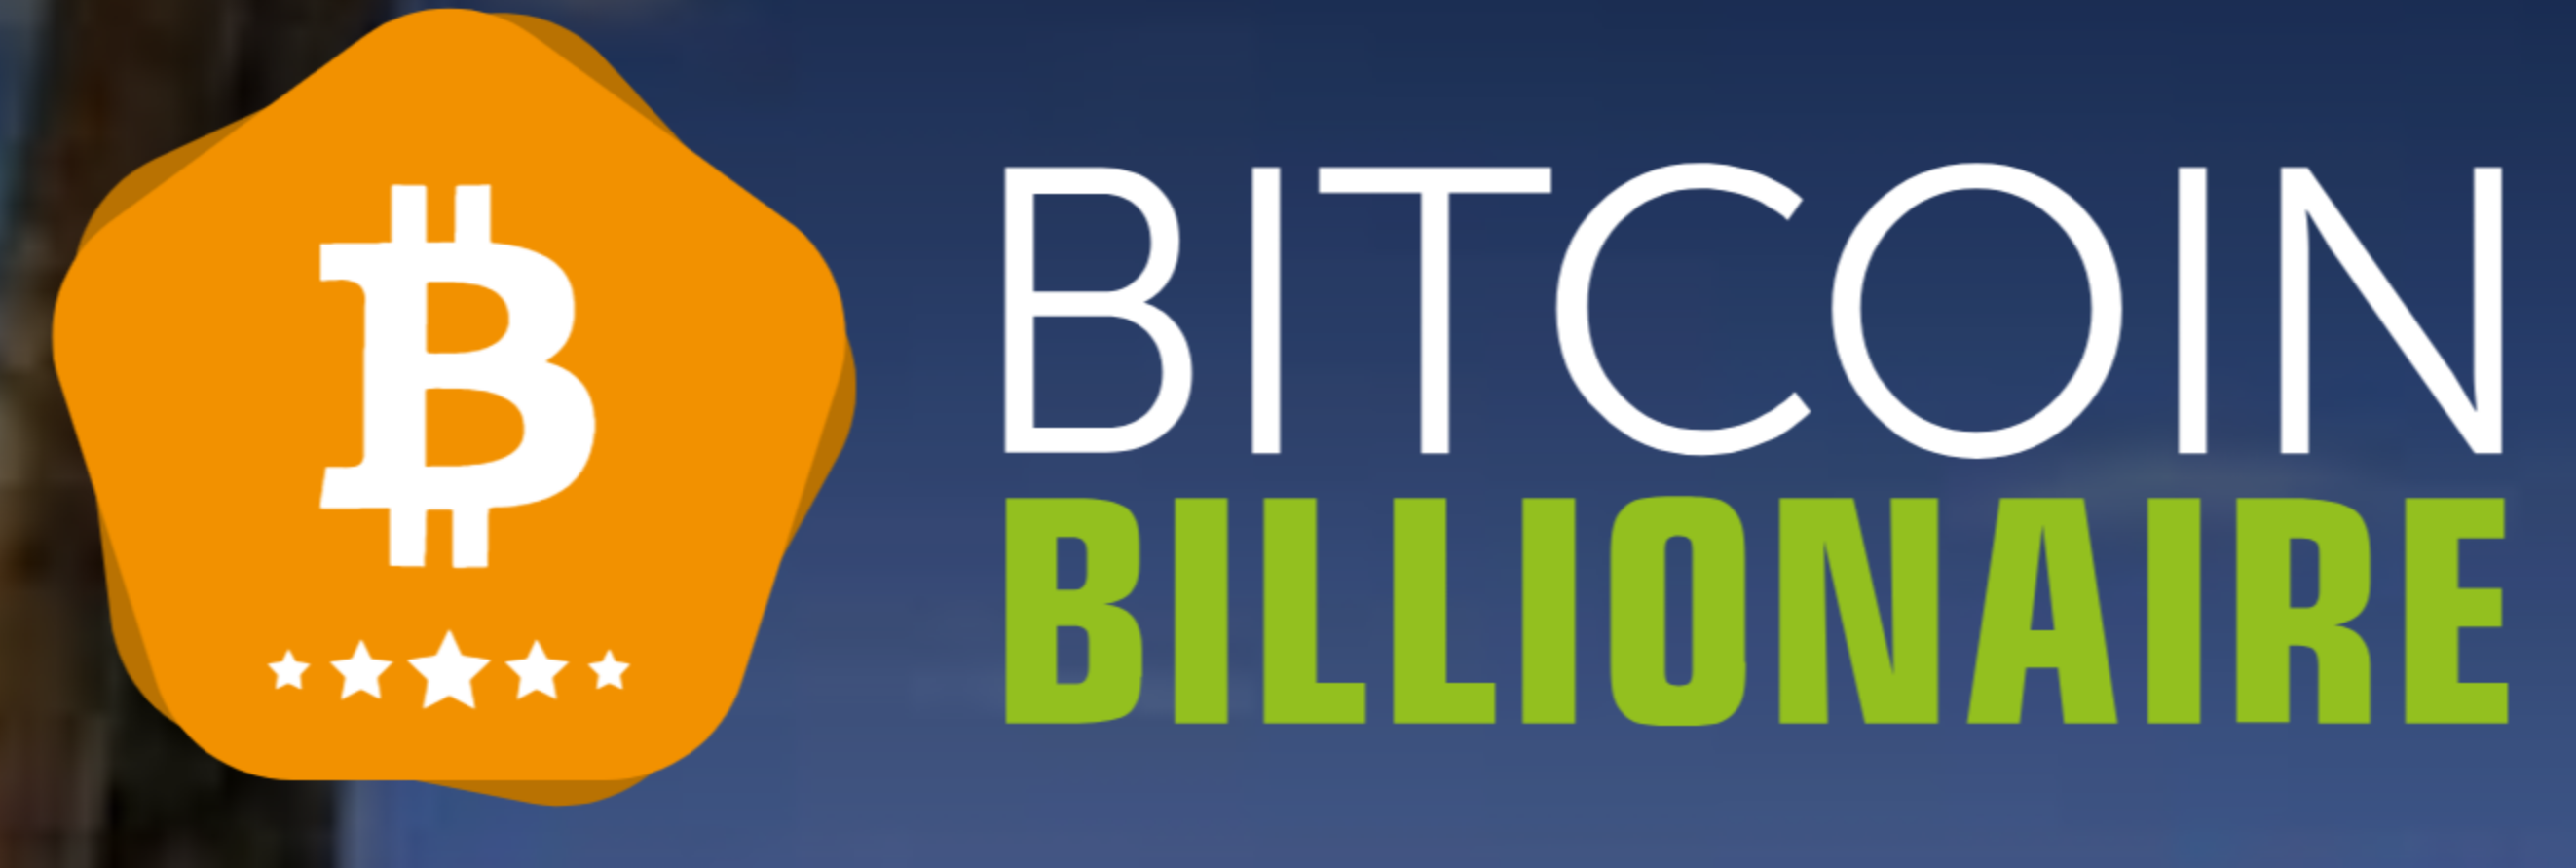 Bitcoin Billionaire1